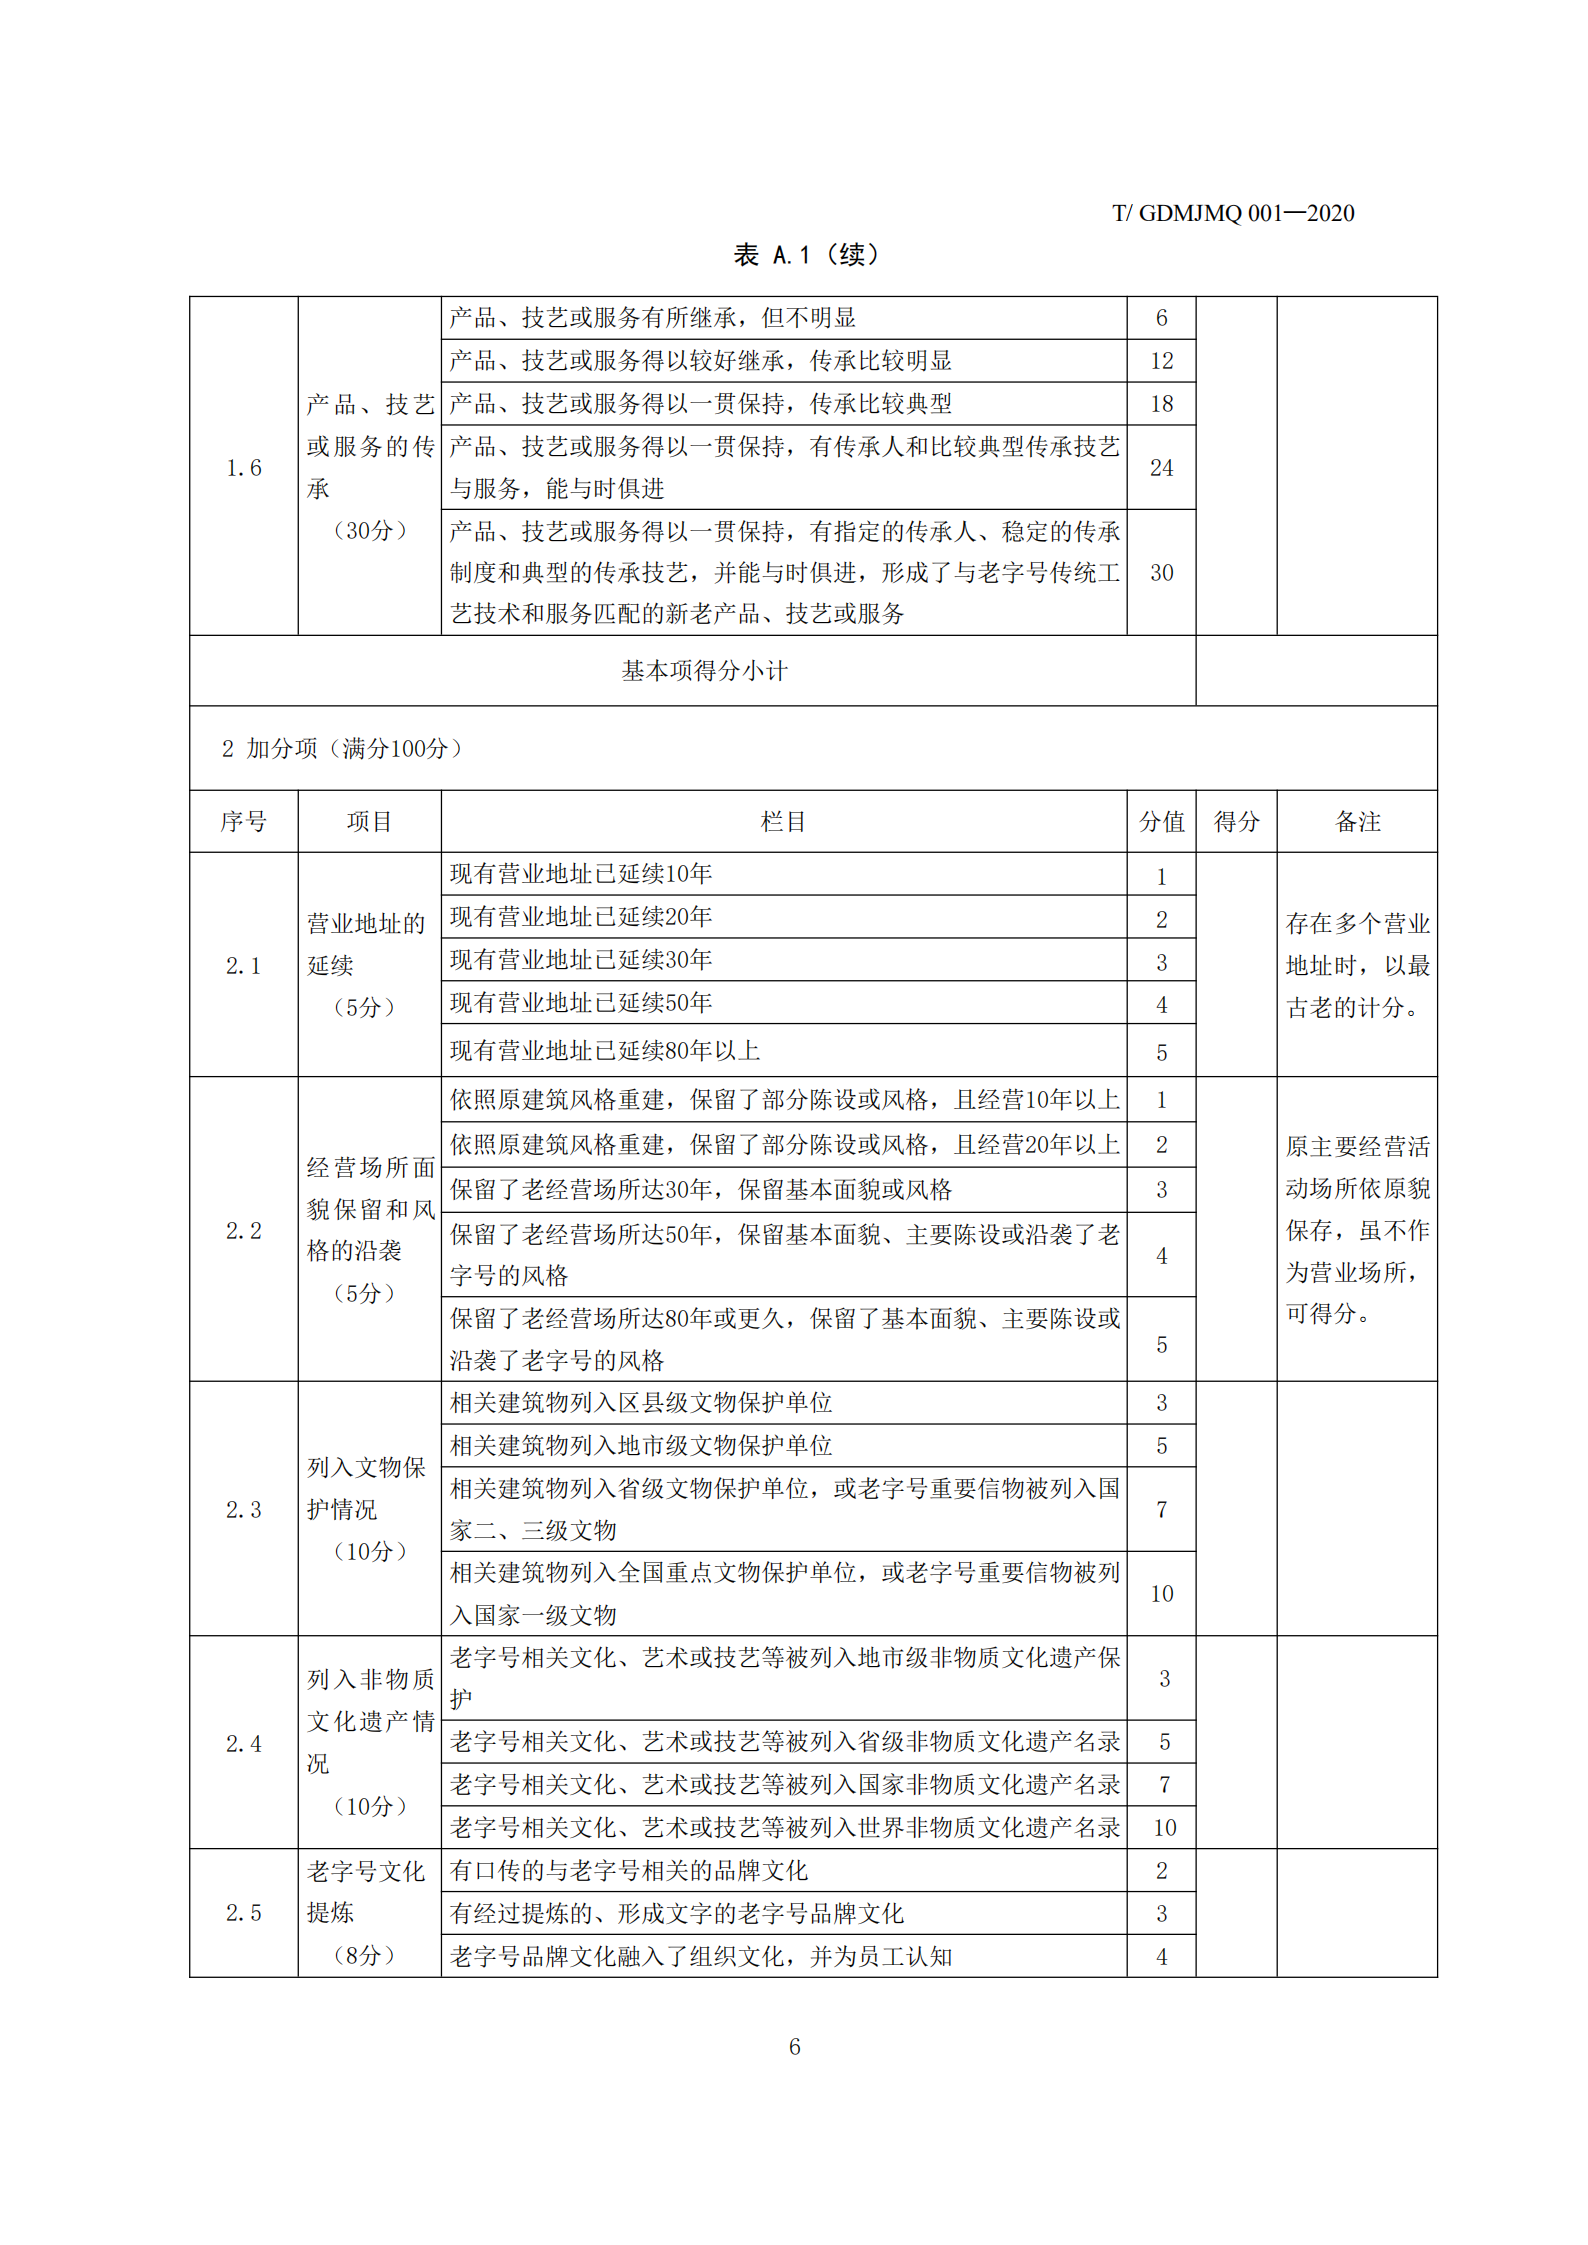 广府老字号认证技术规范(1)_07.png